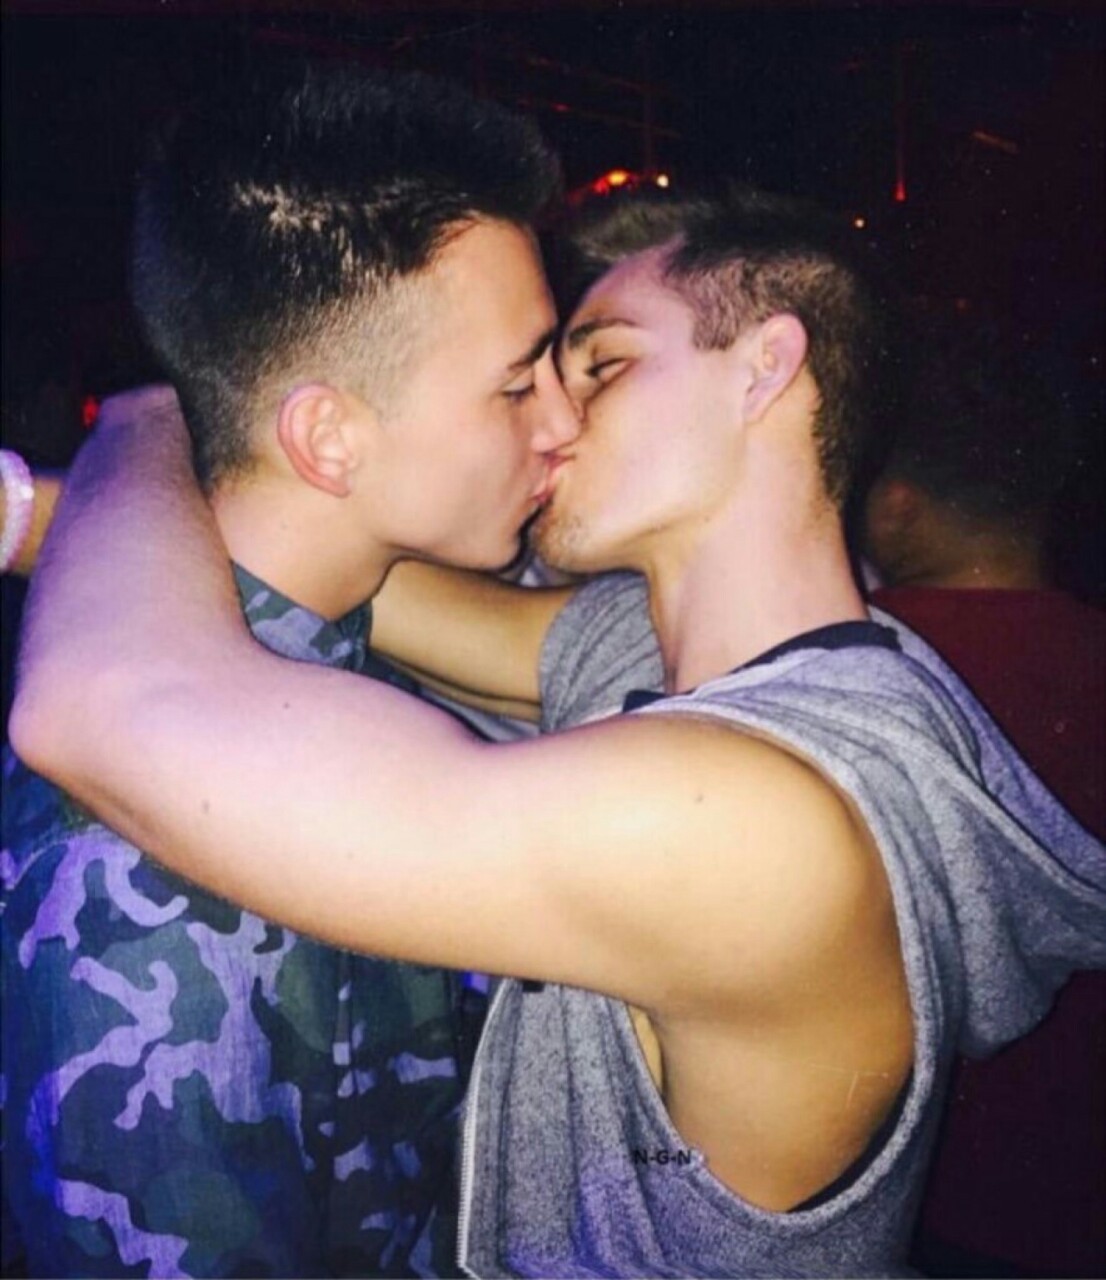 Boy gay teen kiss rad finds keith snooping